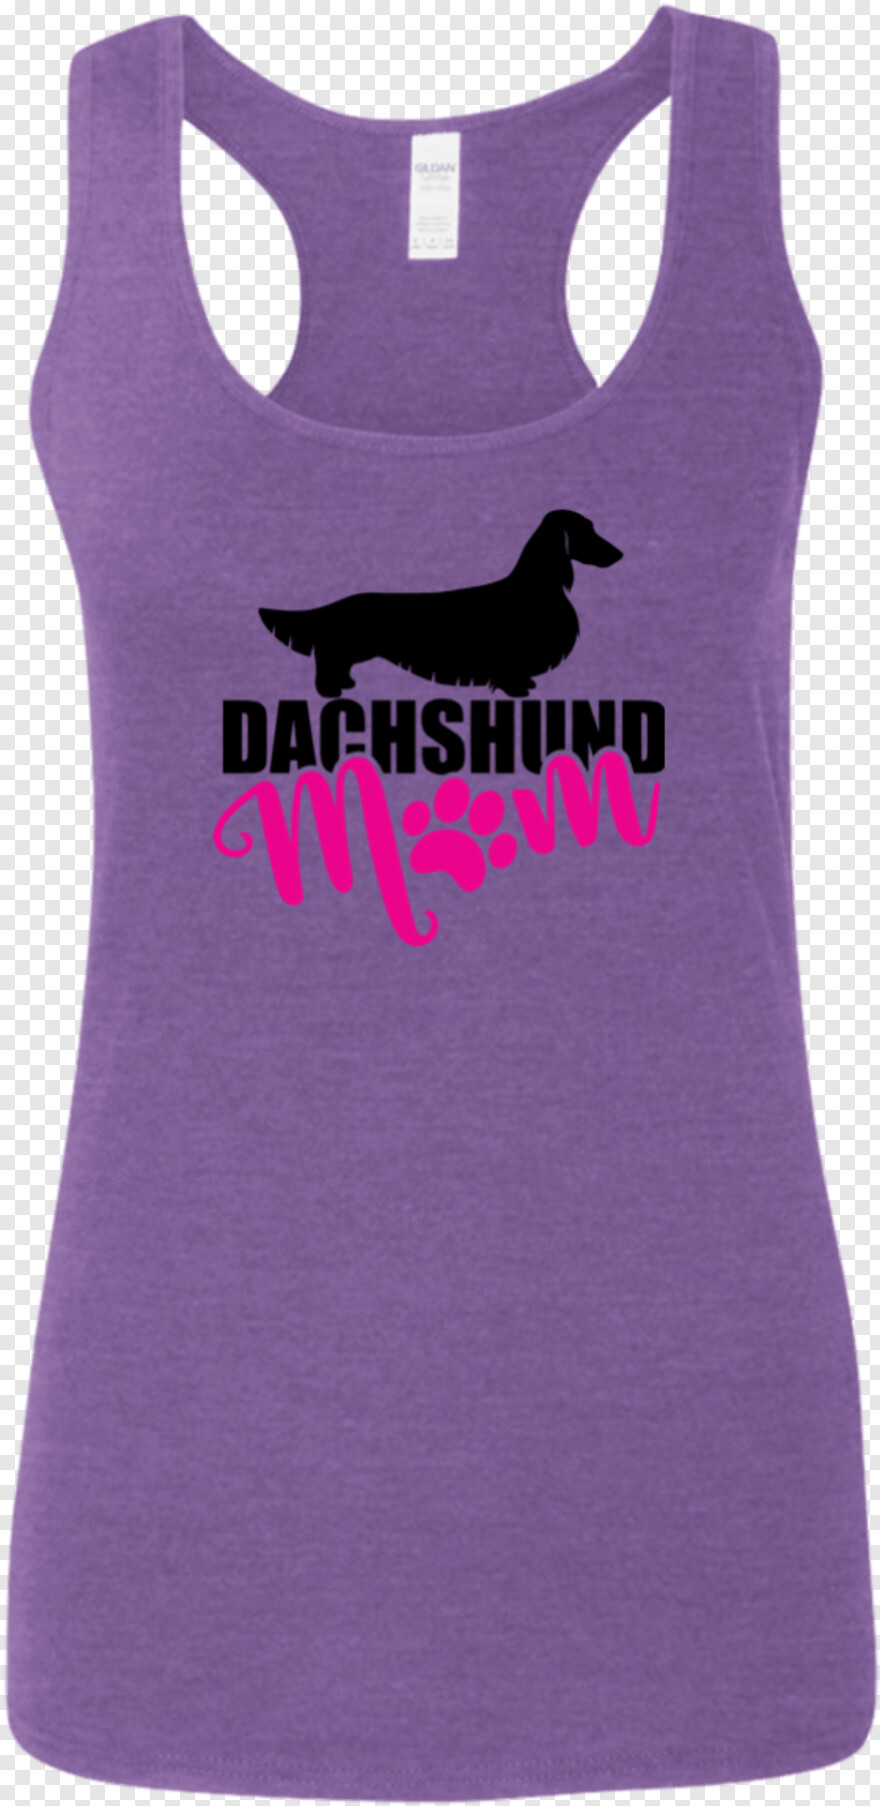 dachshund-silhouette # 514535